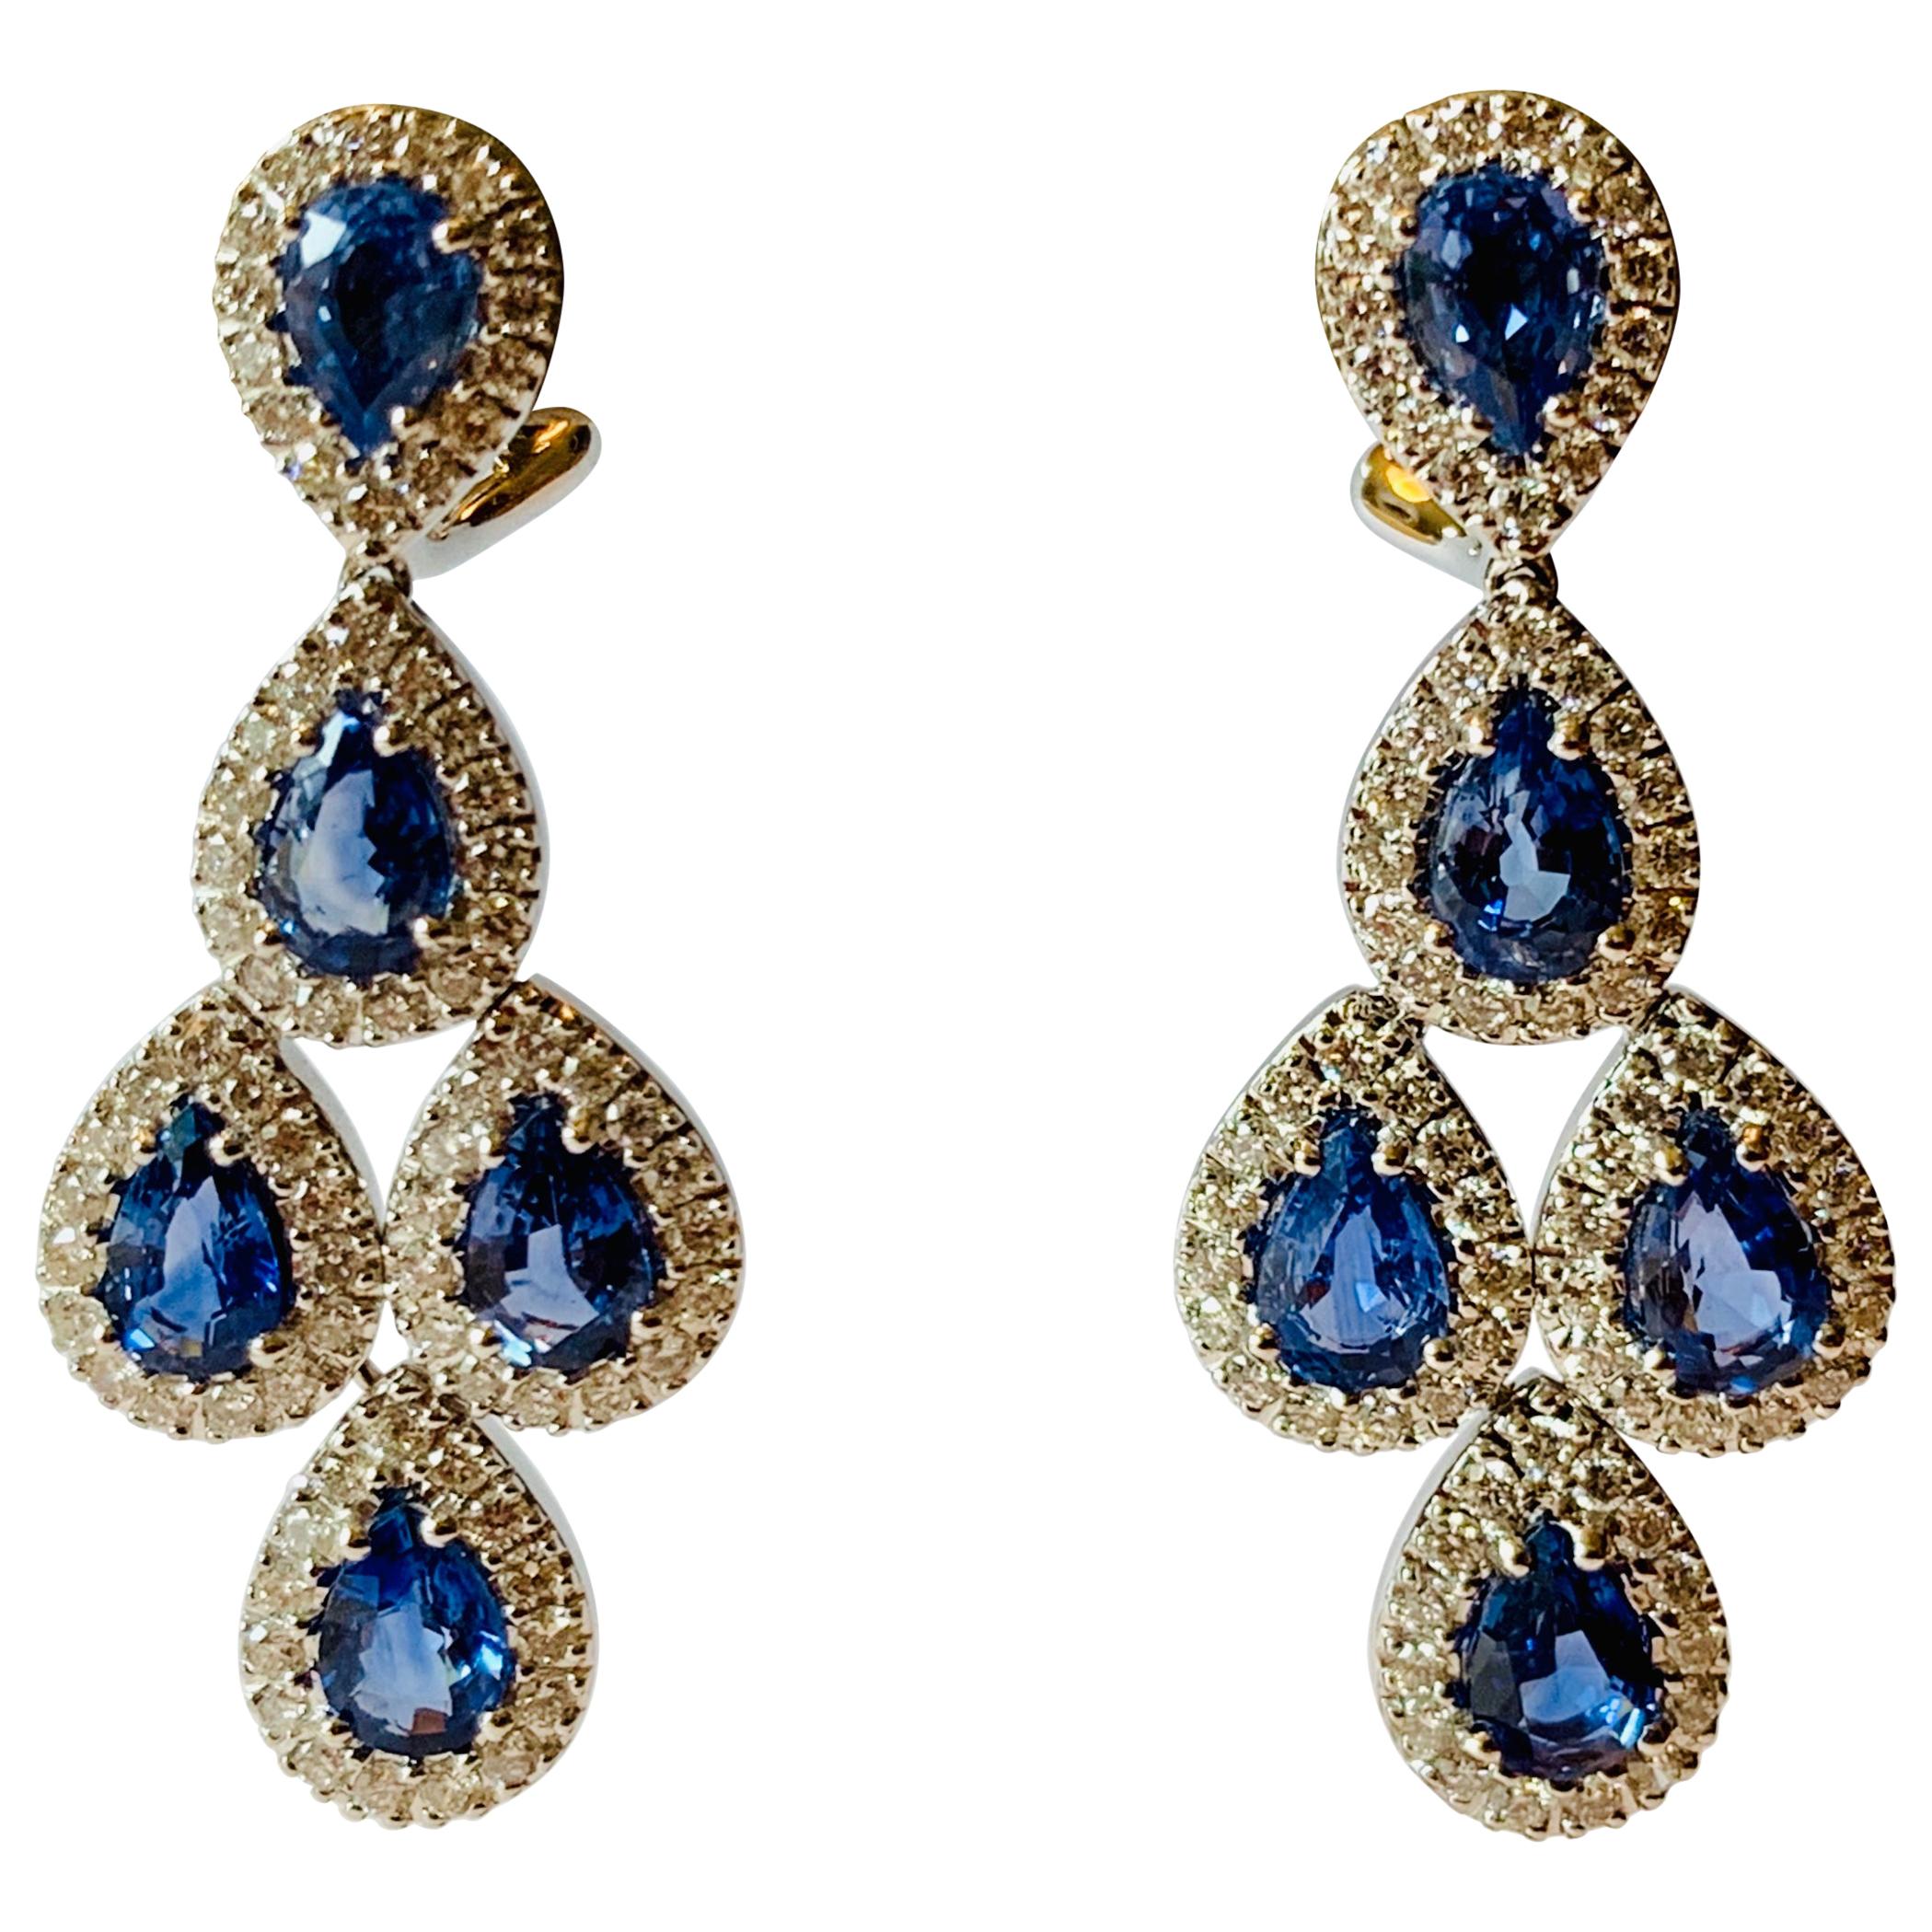 Fantastic Blue and Sapphire Diamond Chandelier Drop Earrings